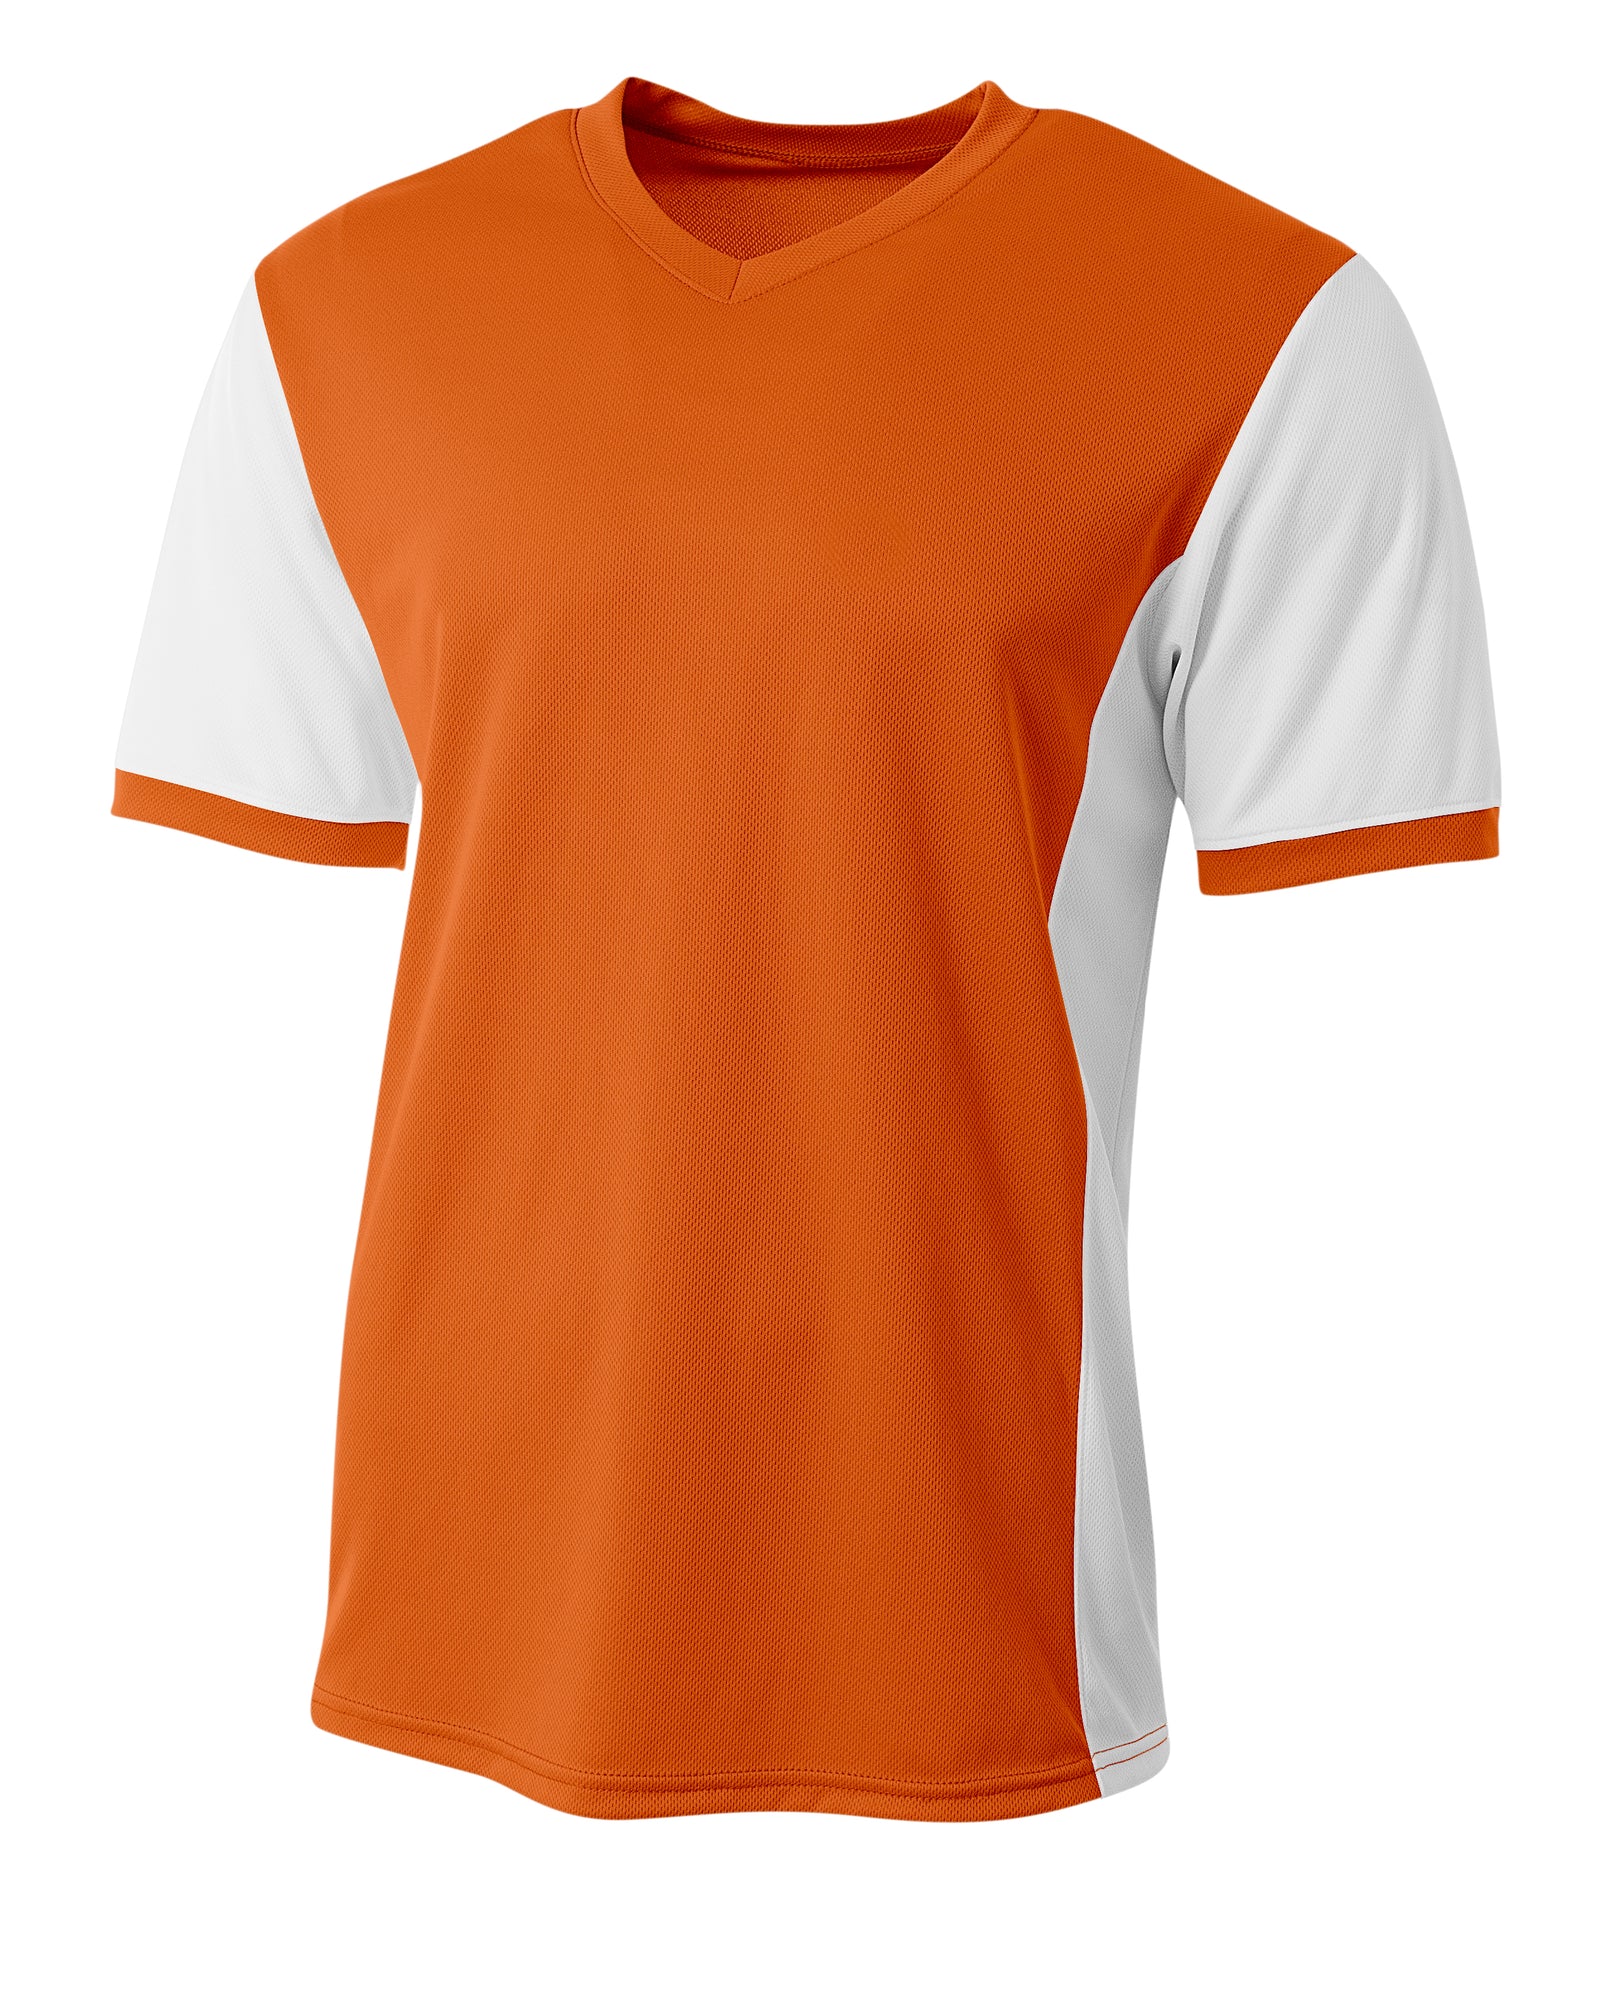 Orange/white A4 A4 Premier Soccer Jersey